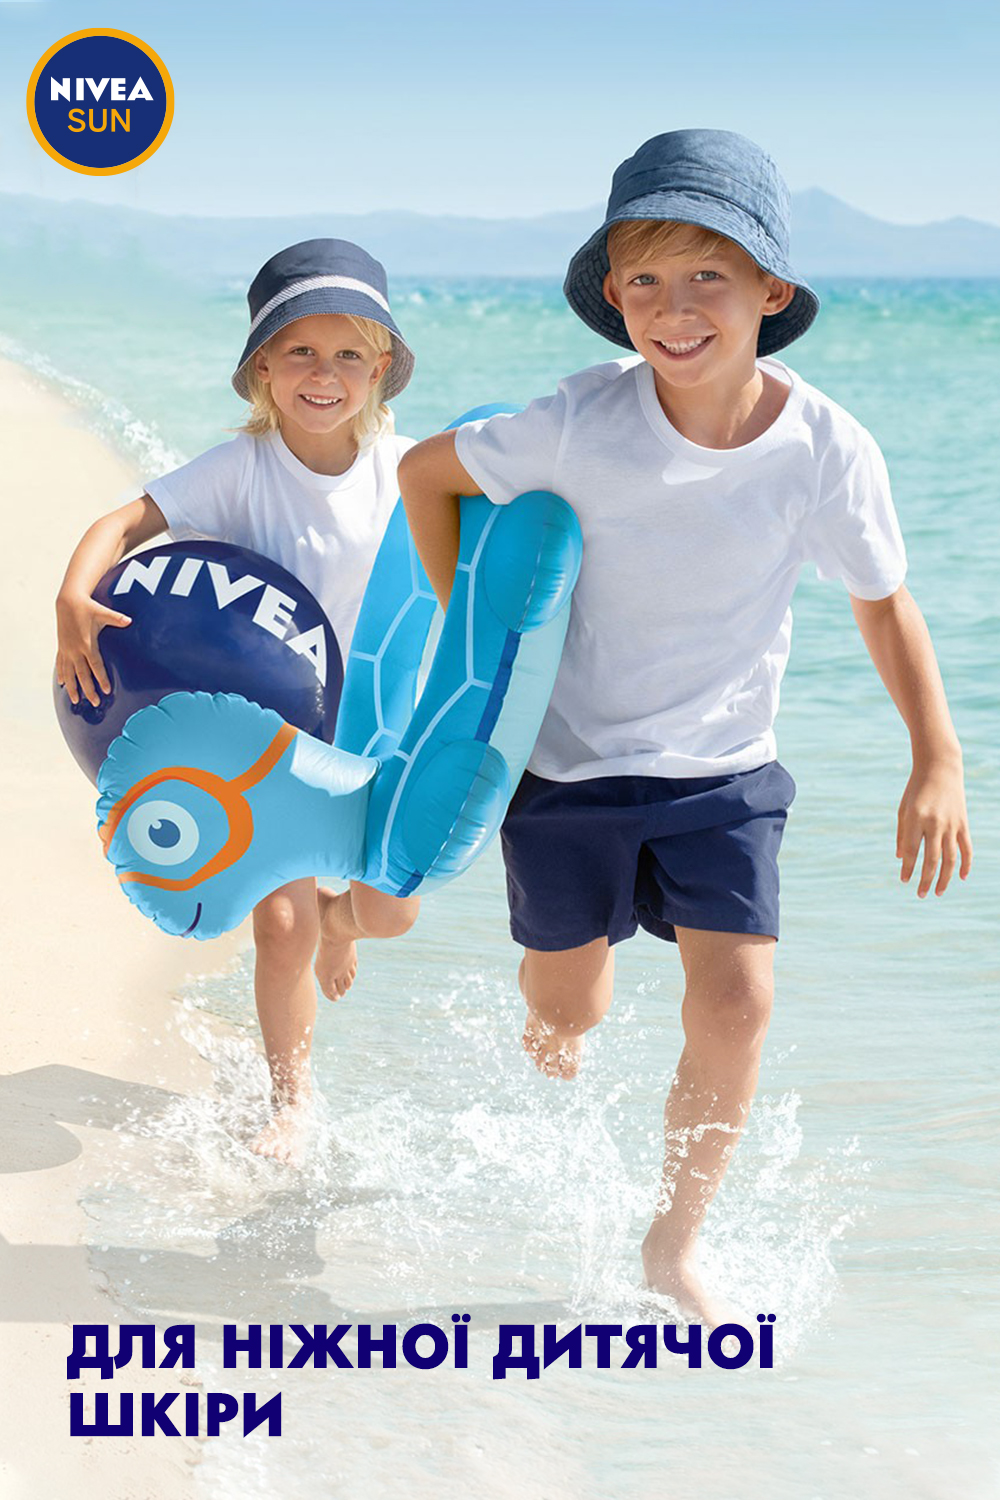 Лосьон детский увлажняющий солнцезащитный Nivea Sun Играй и купайся, SPF 50+, 200 мл - фото 9